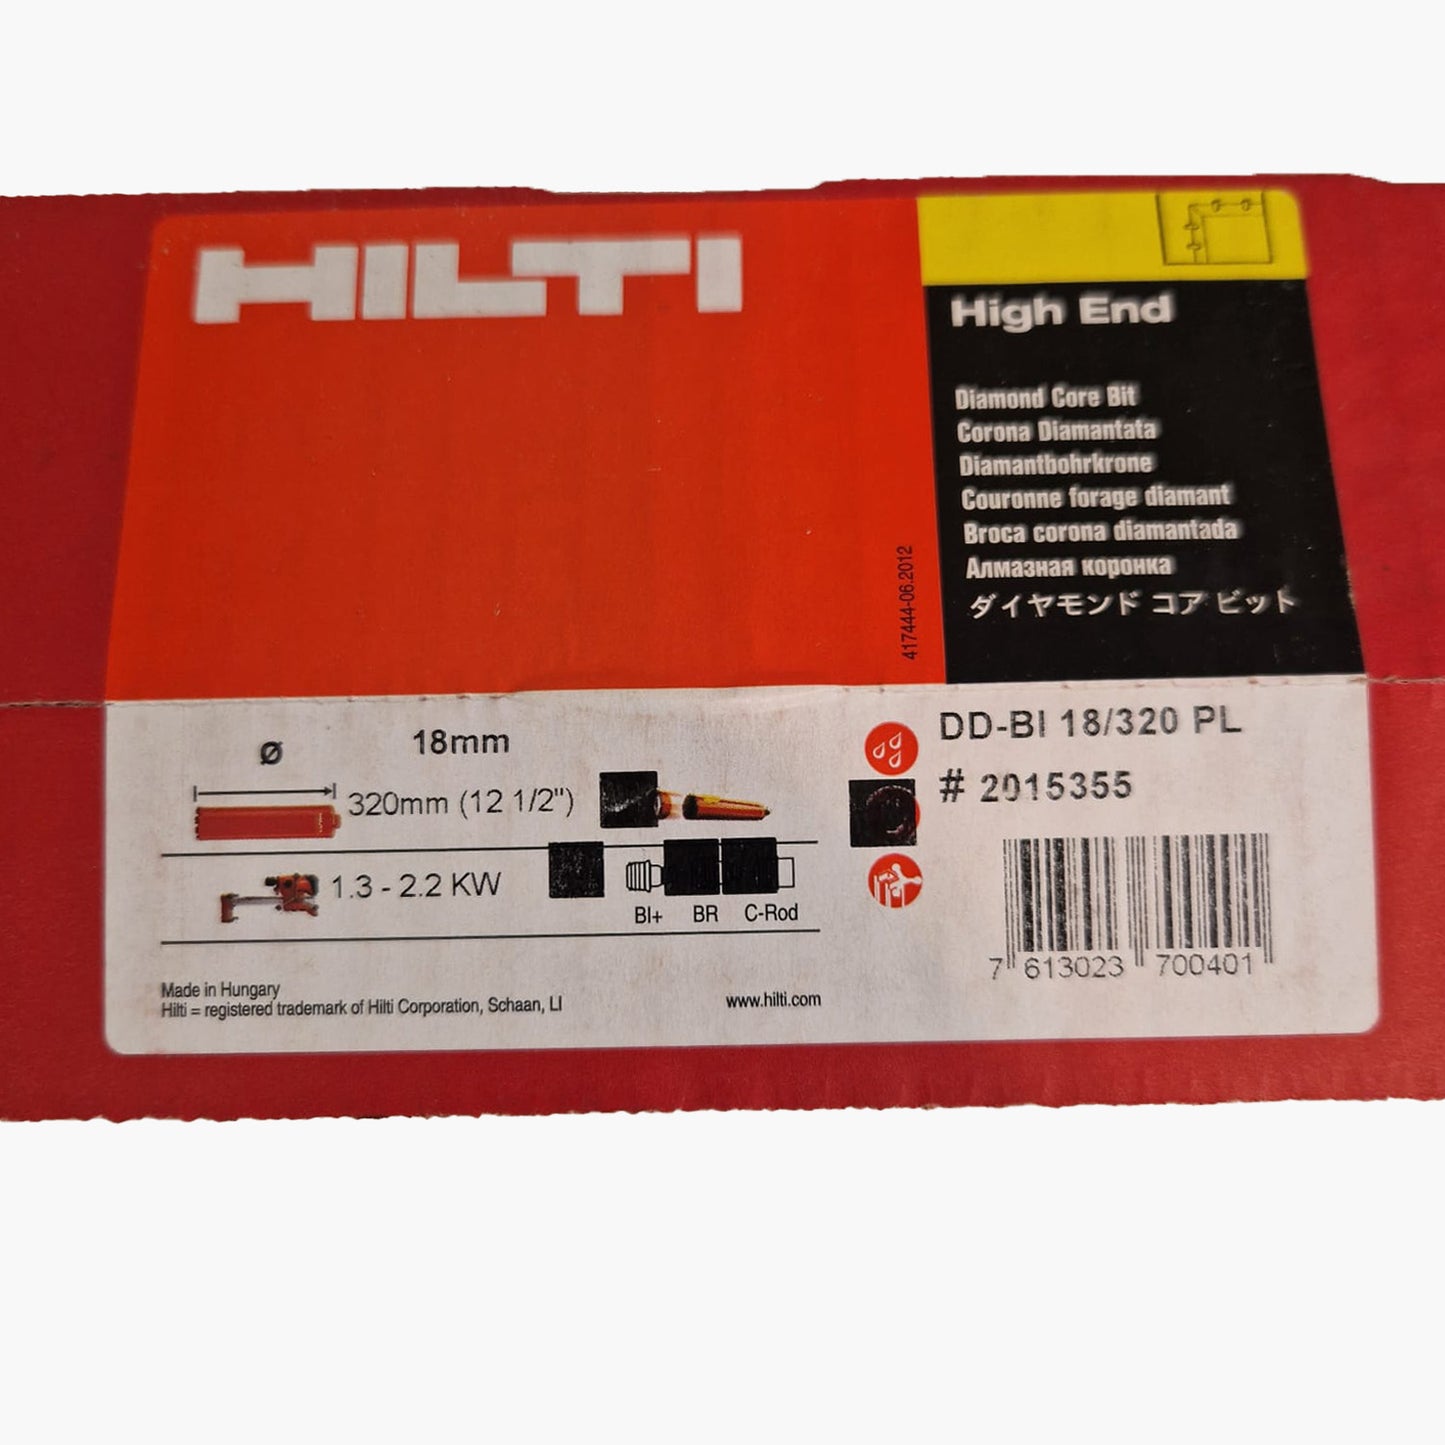 Hilti 18mm Diamond Core Drill Bit - DD-BI 18/320 #2015355 | Precision Drilling Tool